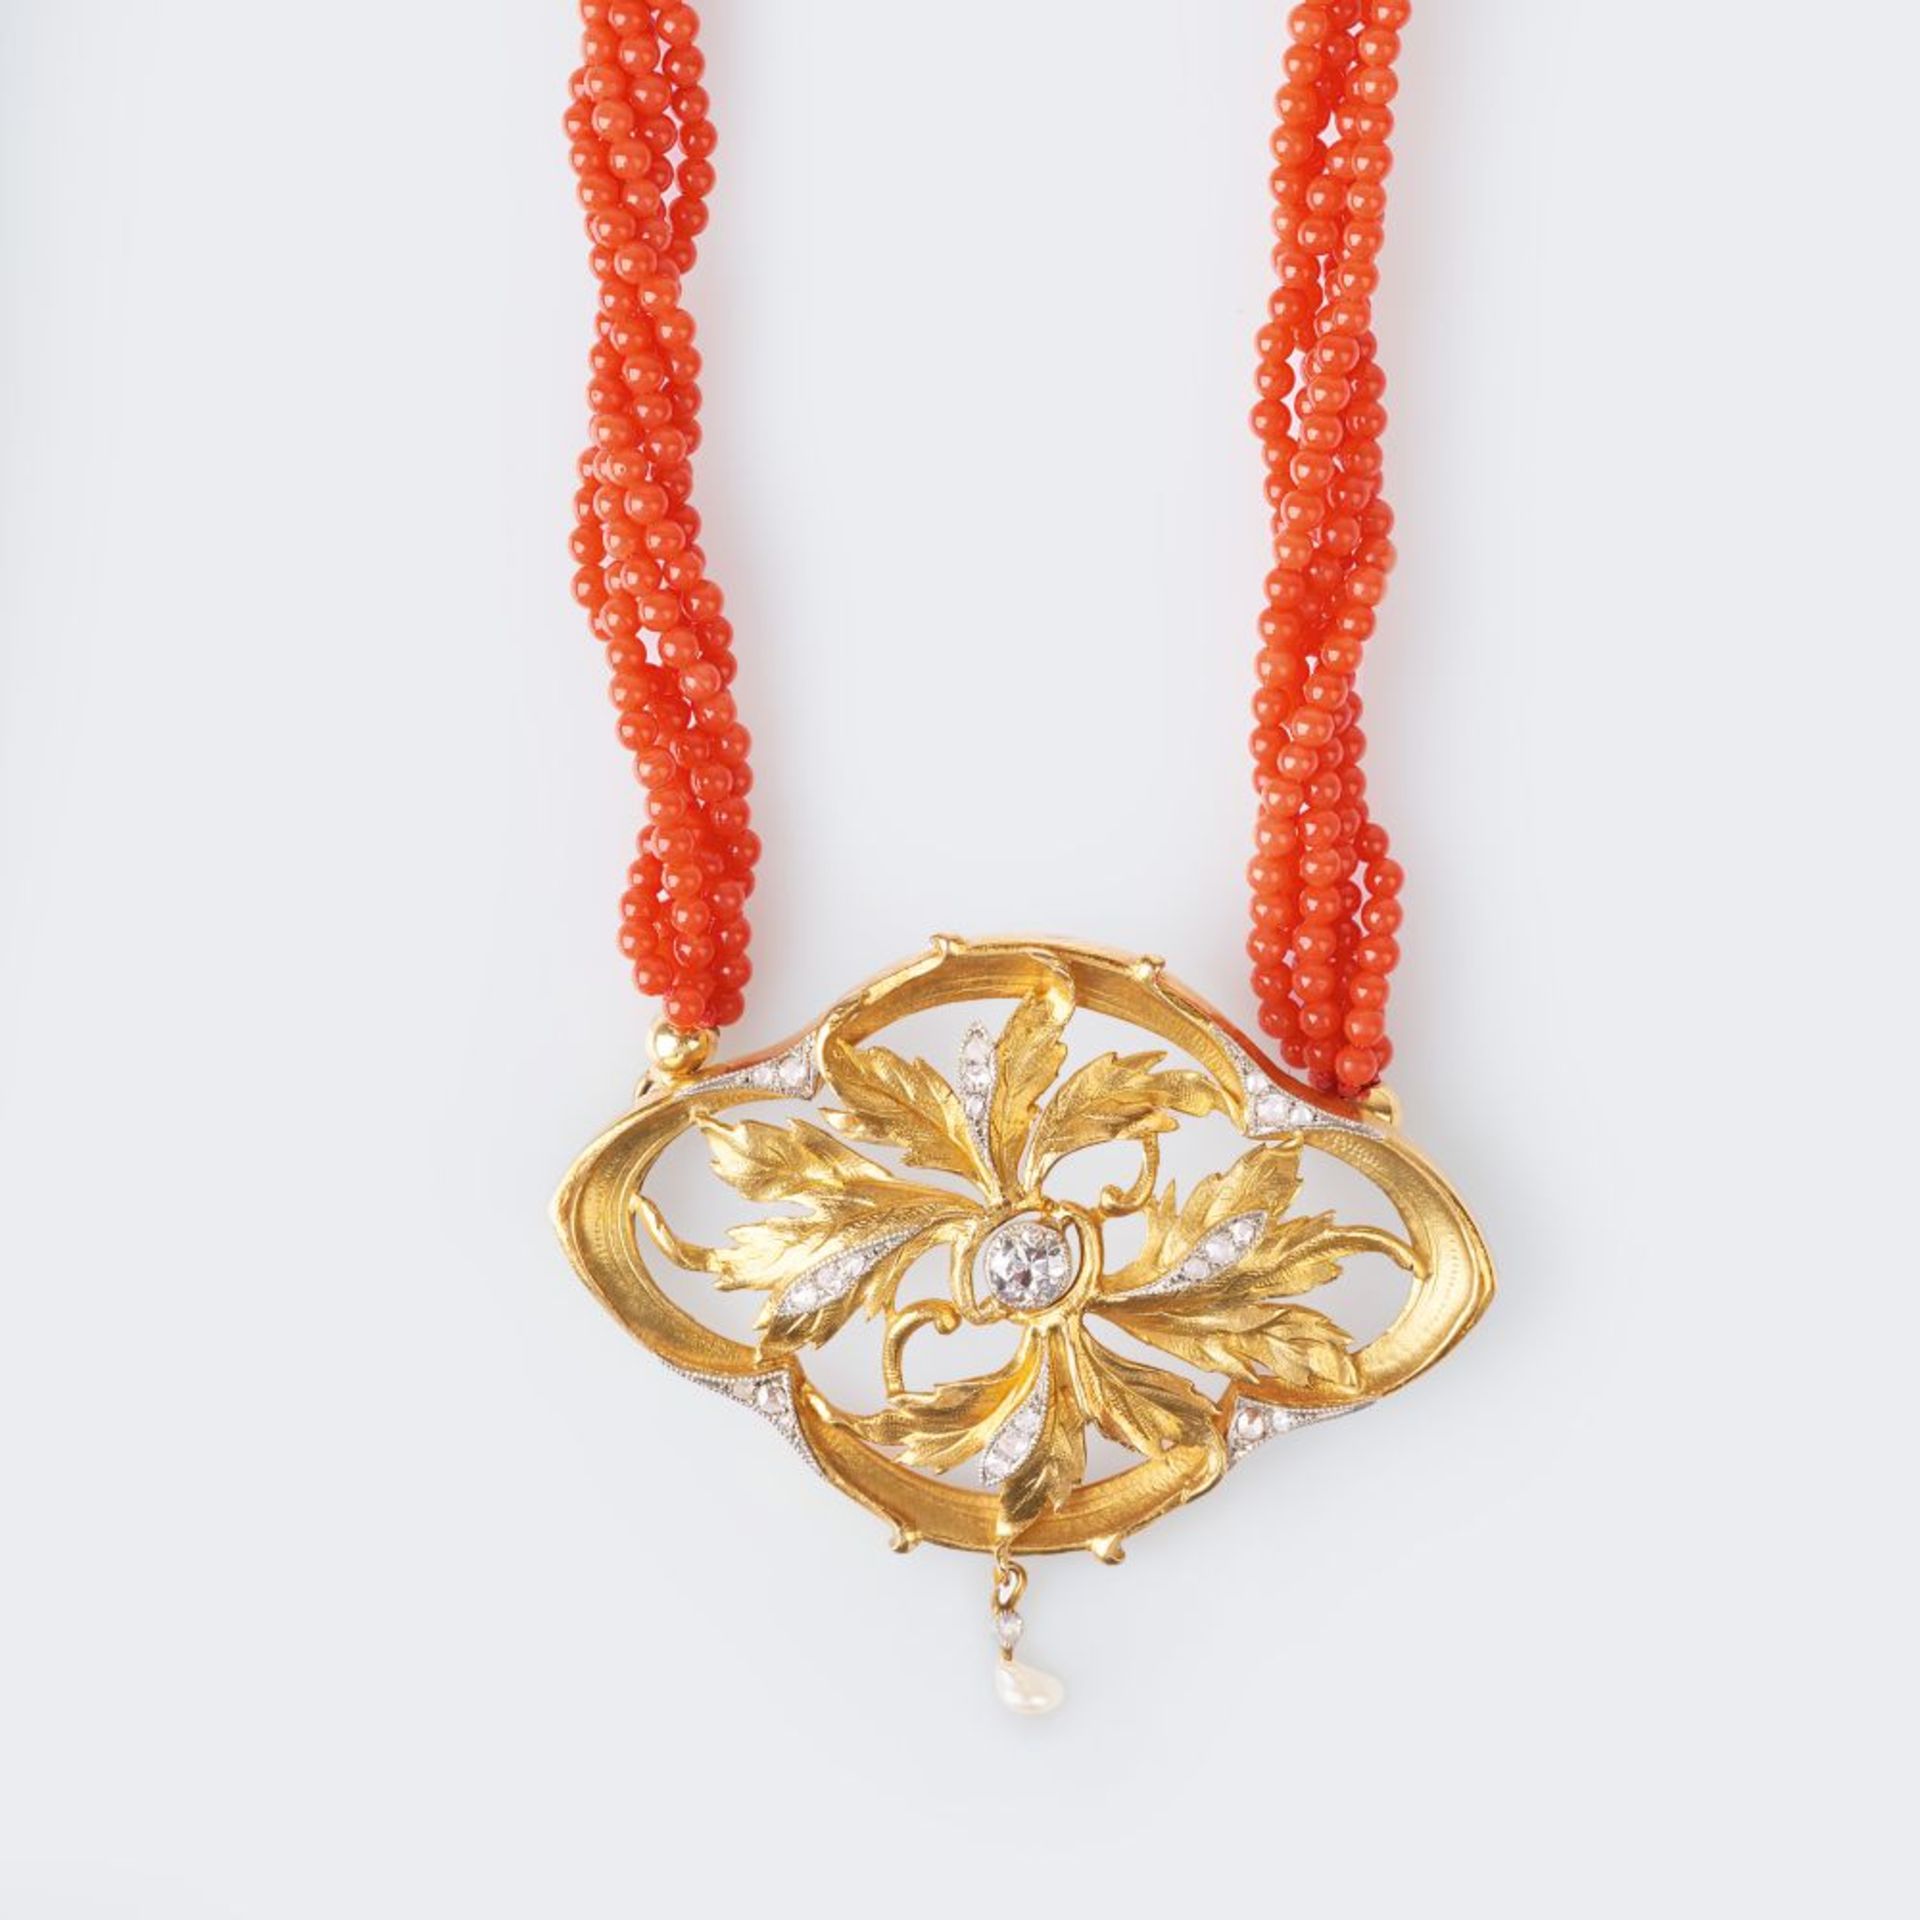 An Art-Nouveau Diamond Pendant on Coral Necklace.